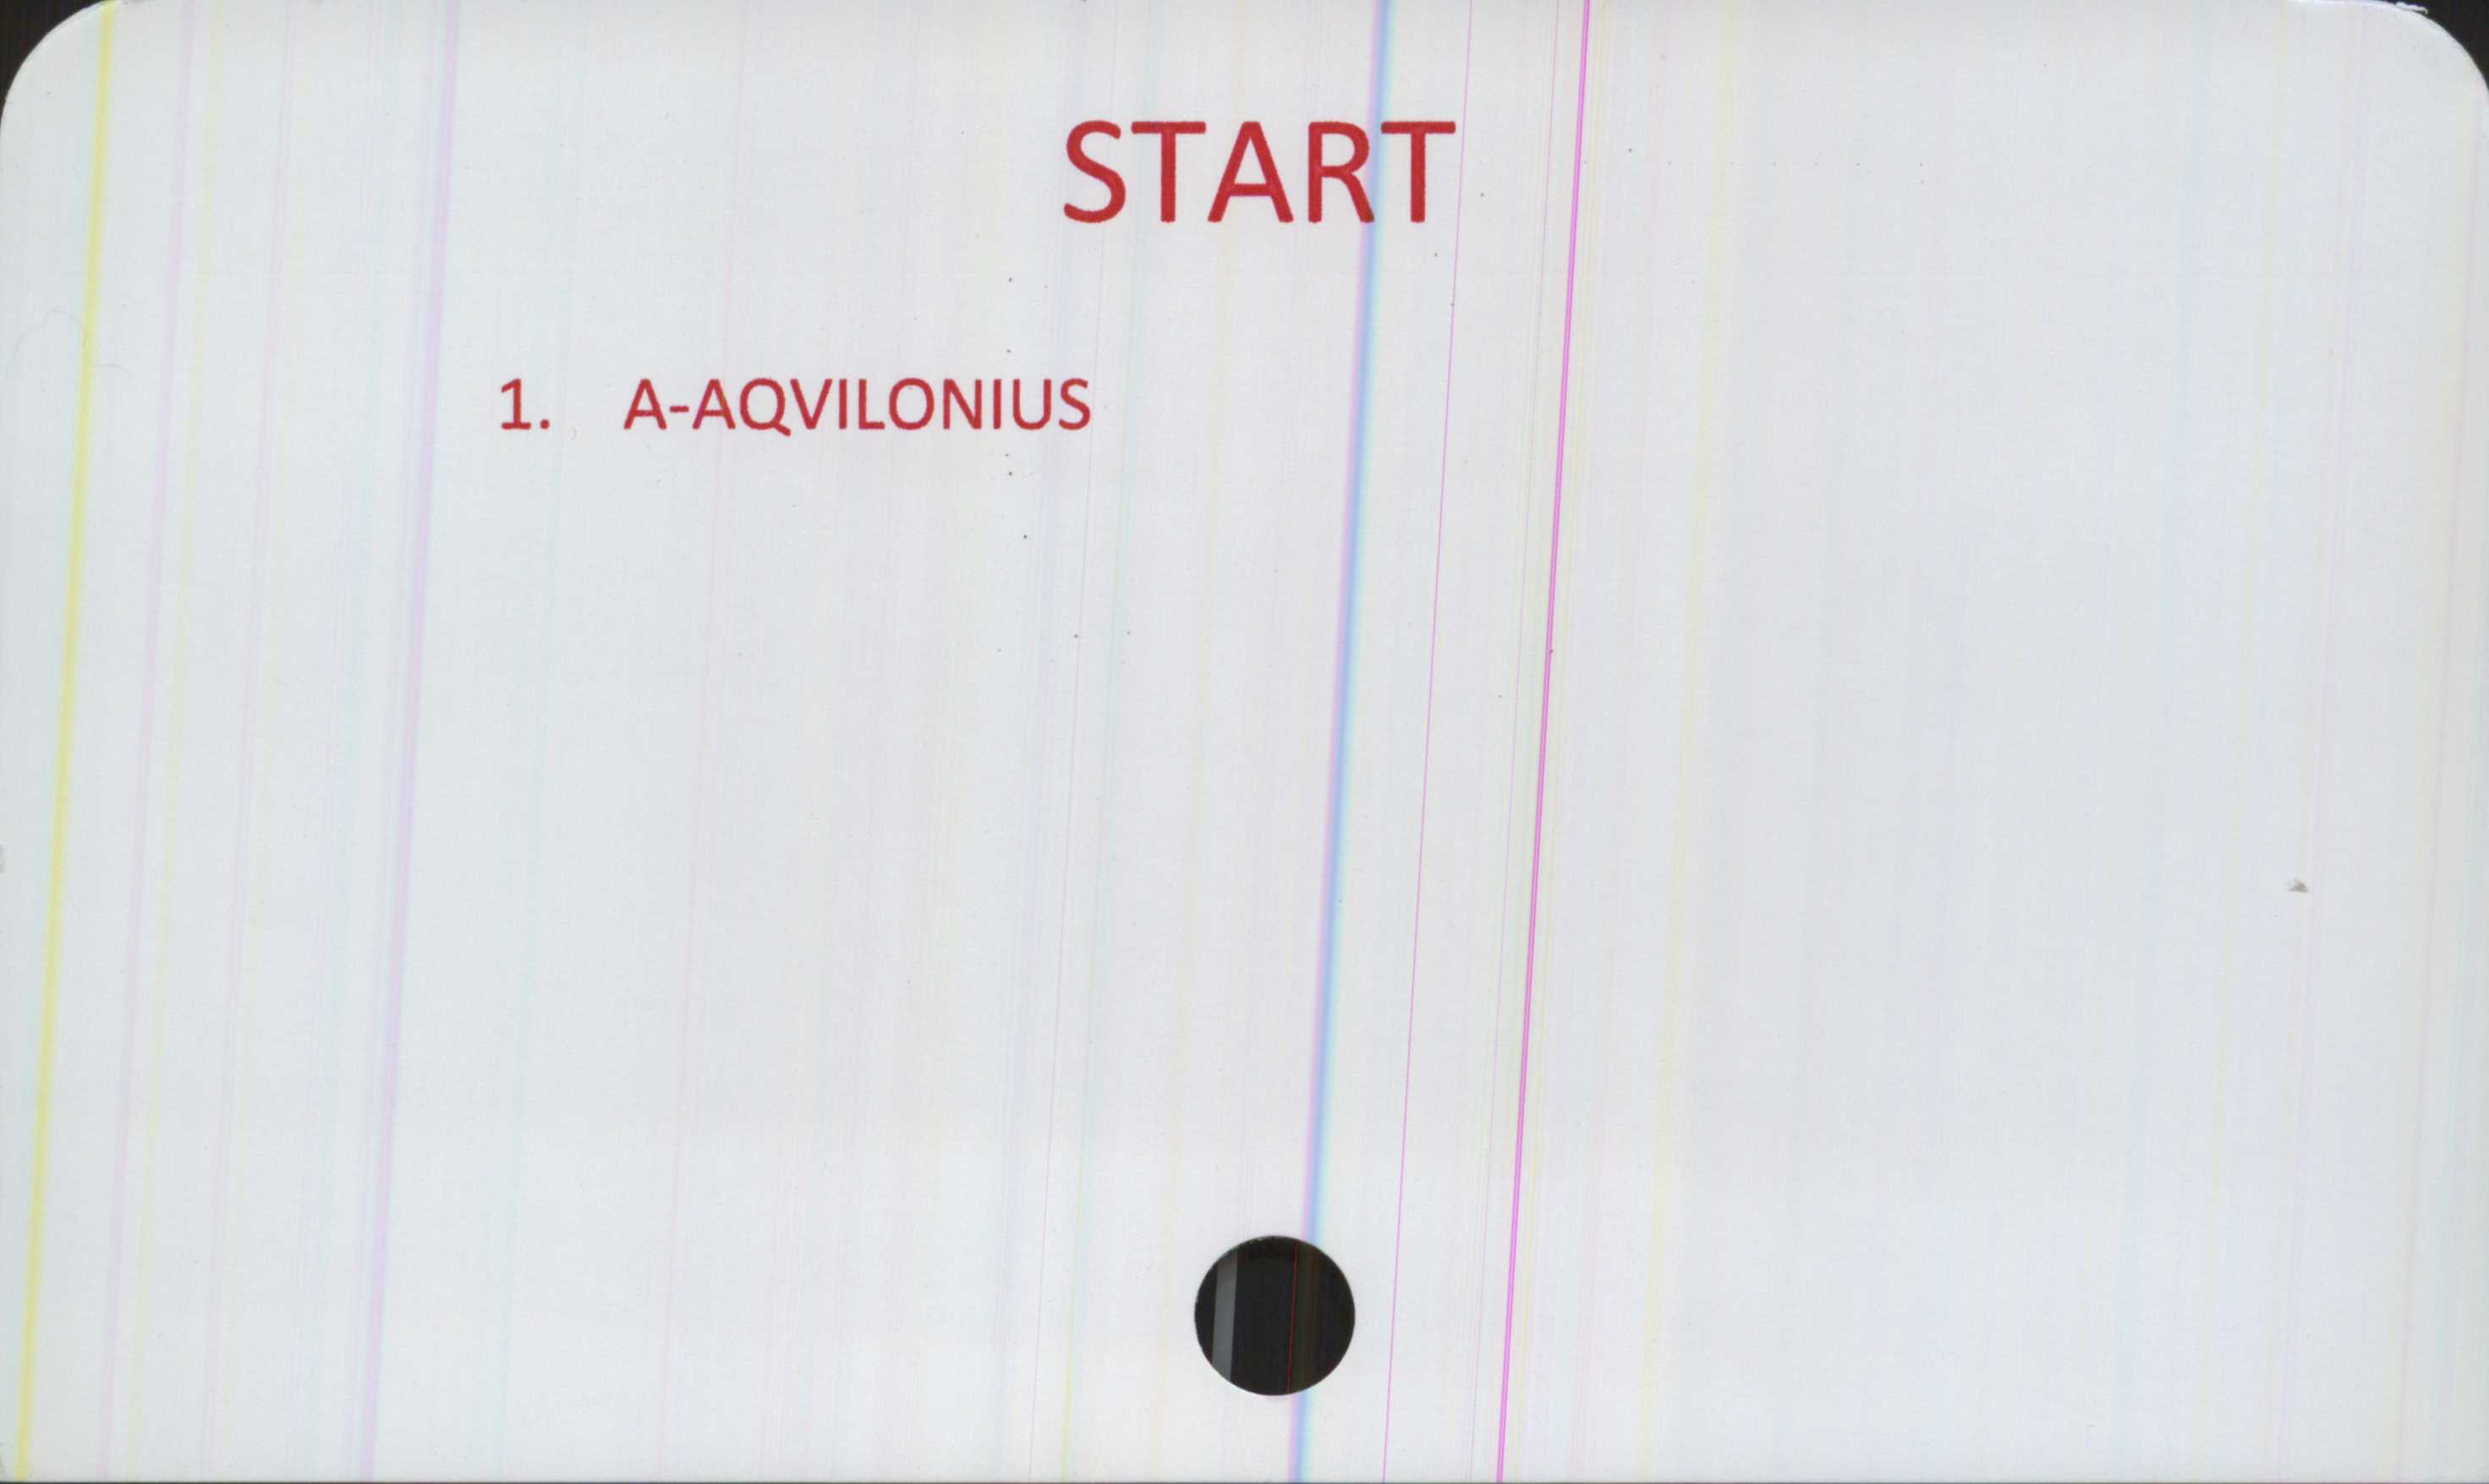  ﻿START

aqvilonius